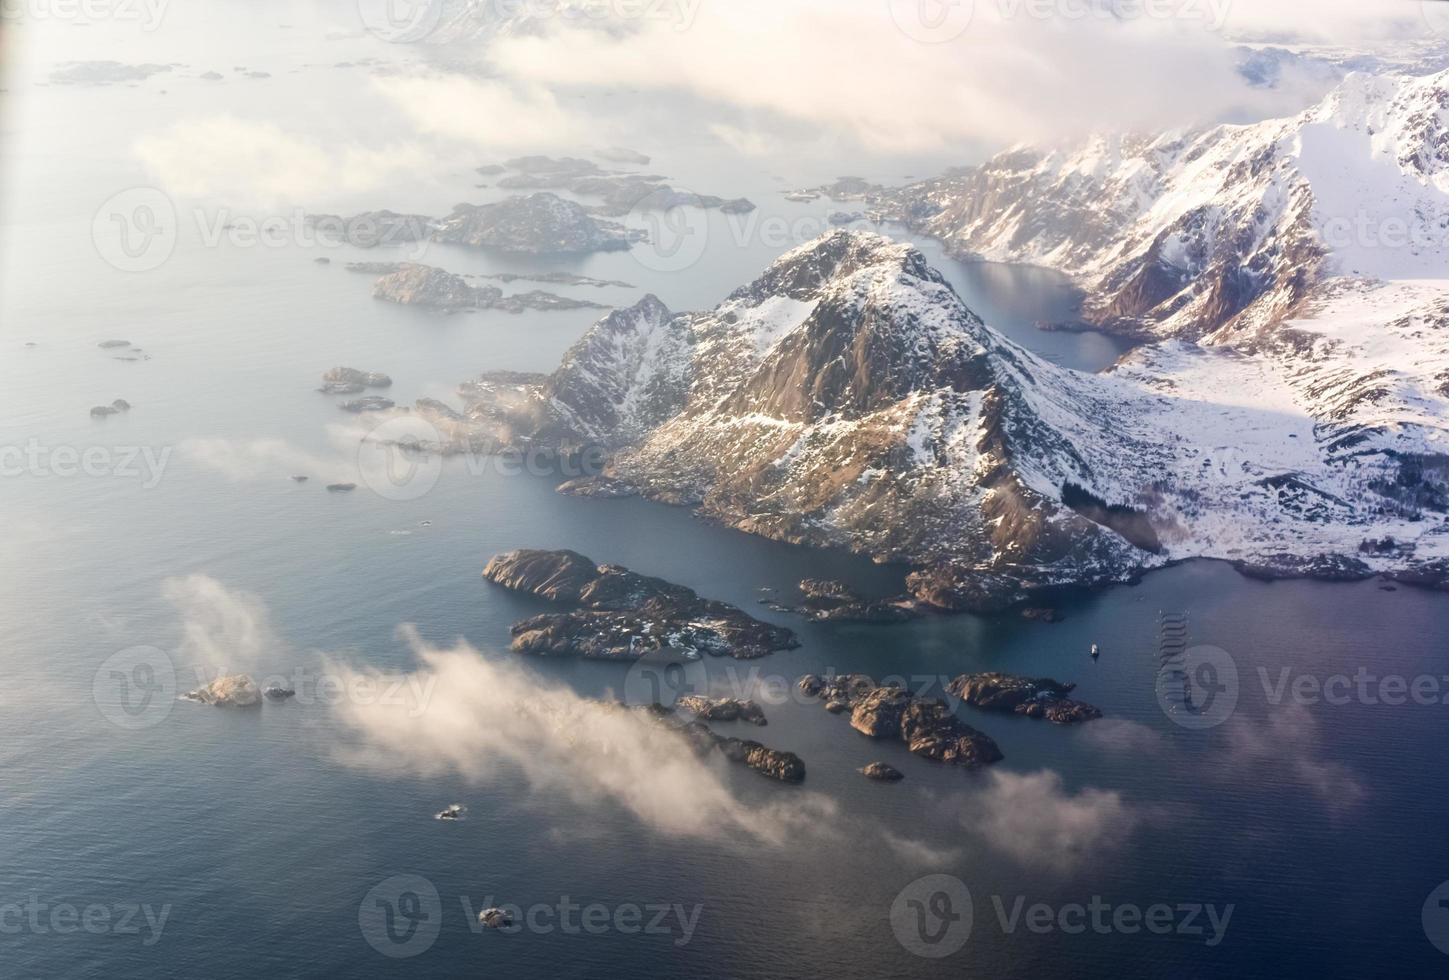 uma vista aérea das montanhas cobertas de neve das ilhas lofoten, noruega no inverno. foto